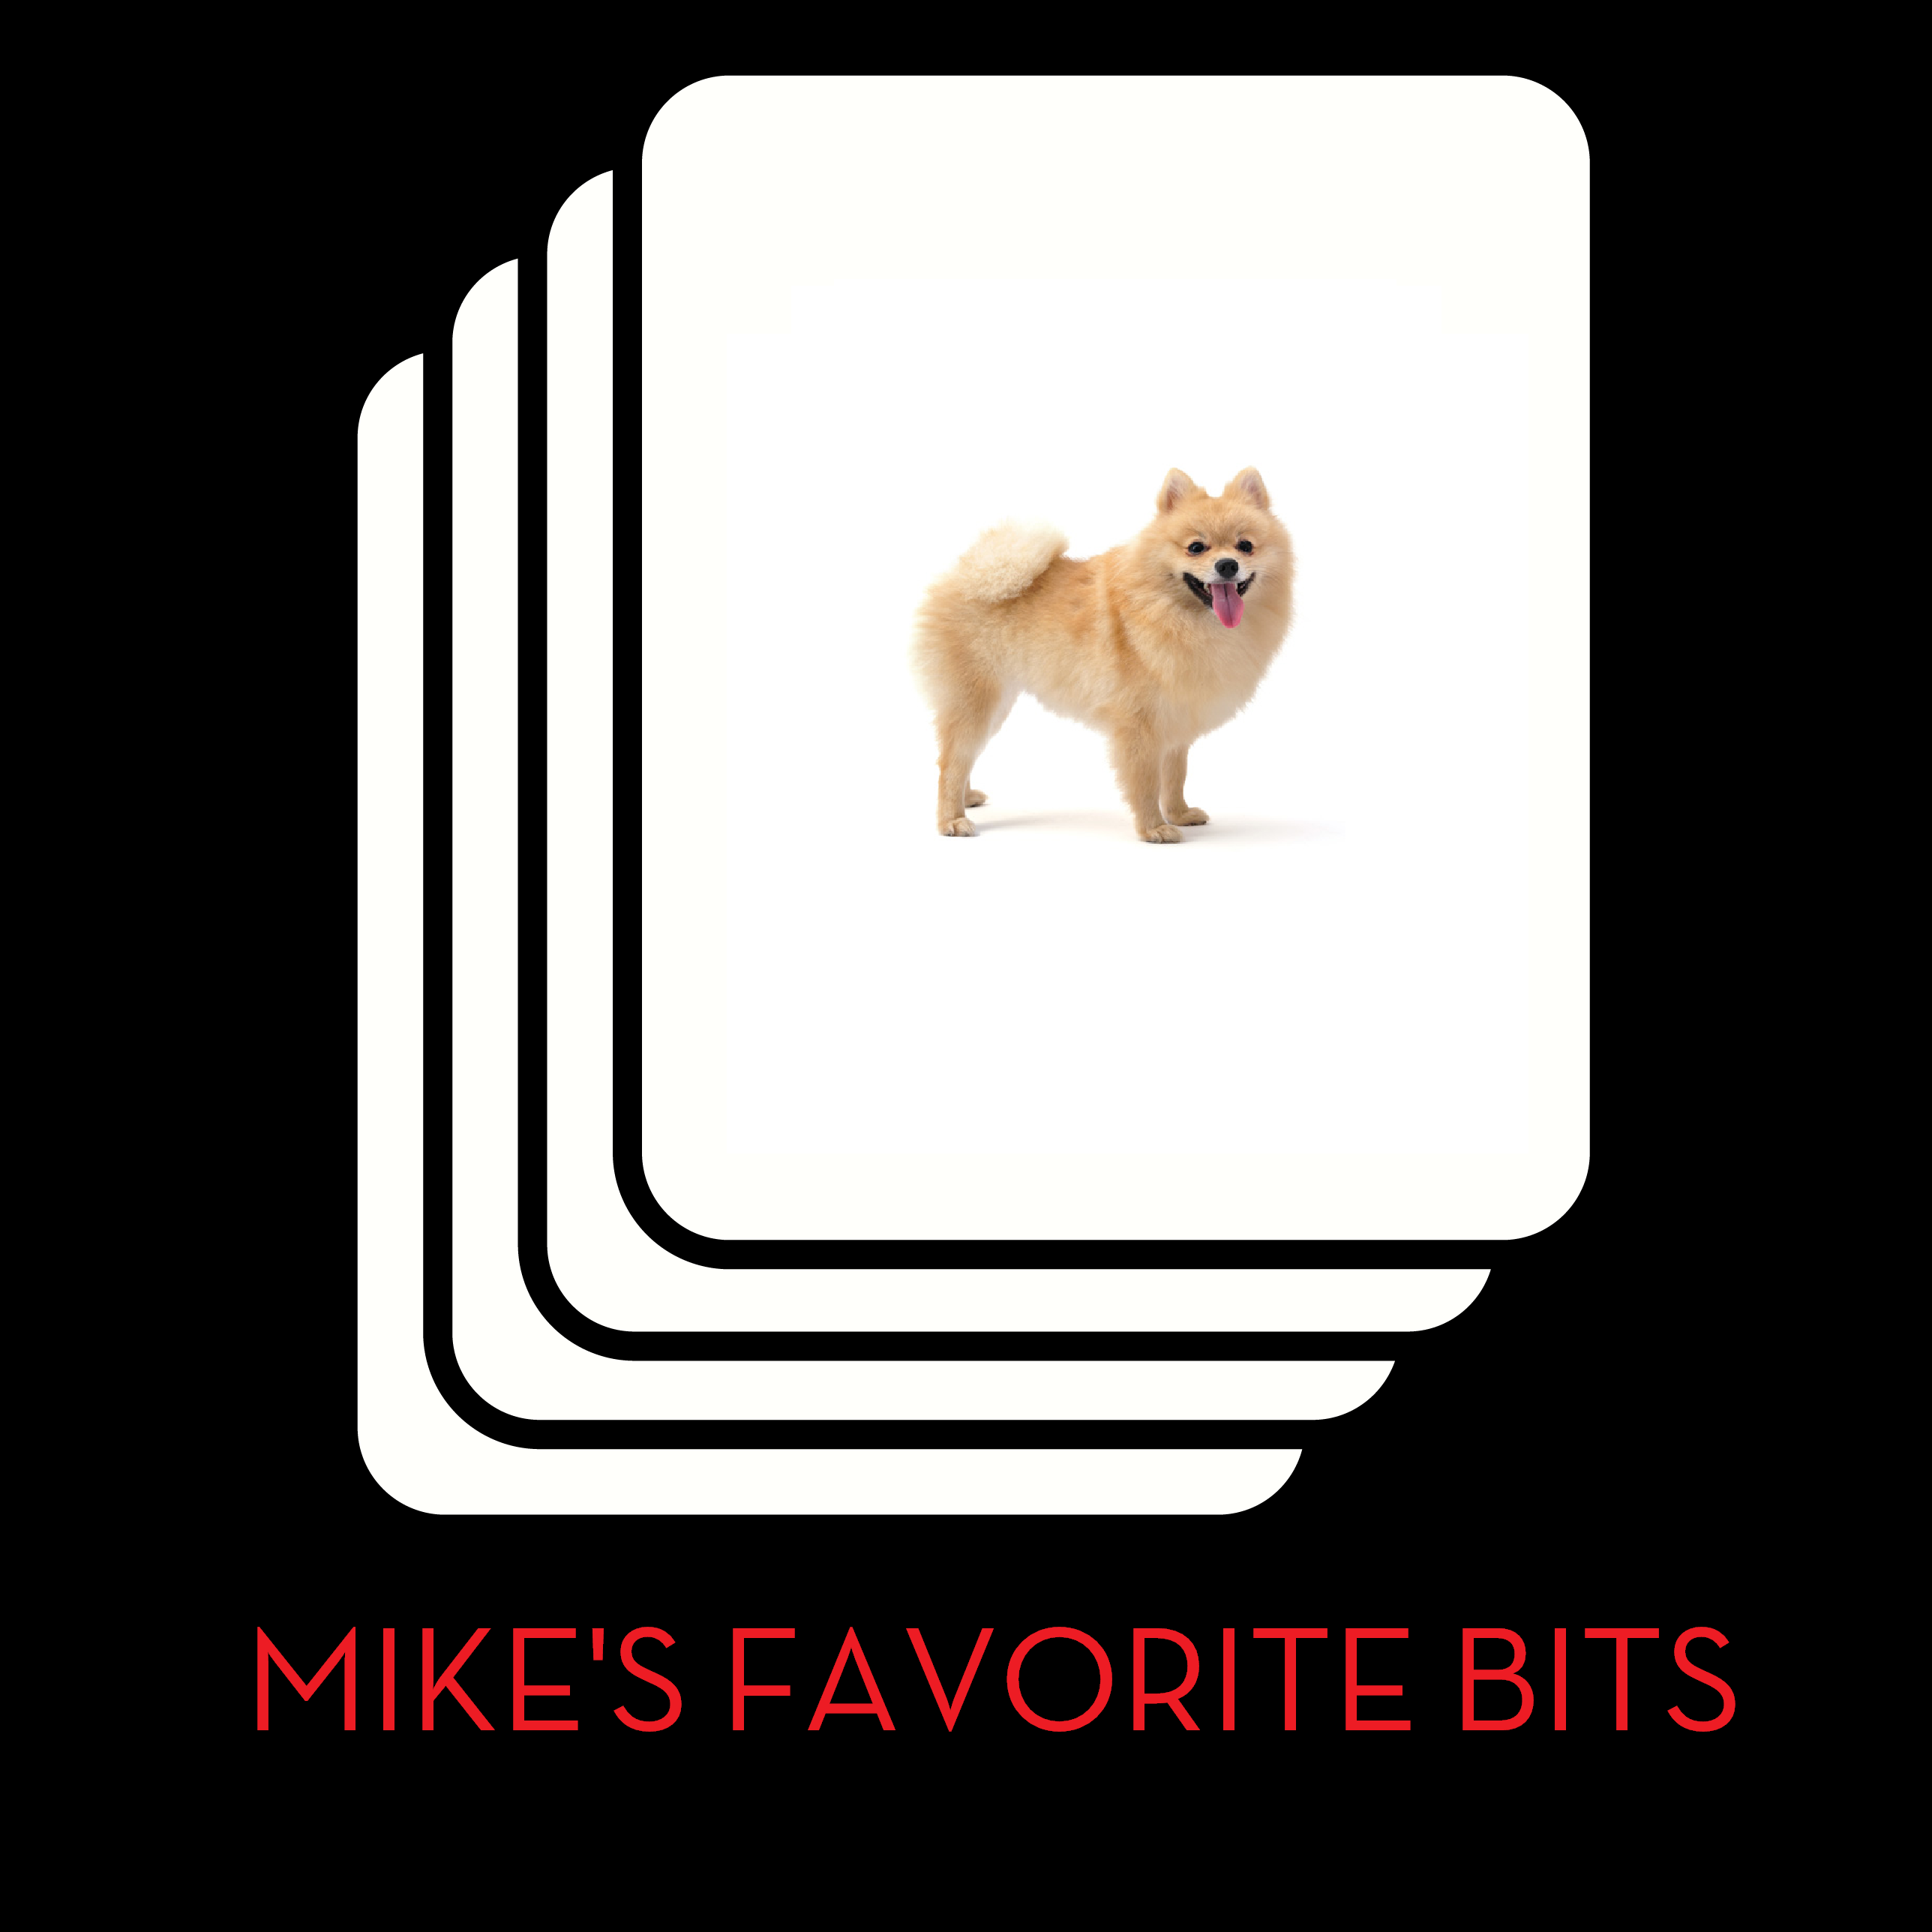 MIKE'S FAVORITE BITS: WFOD SERIAL PART 1